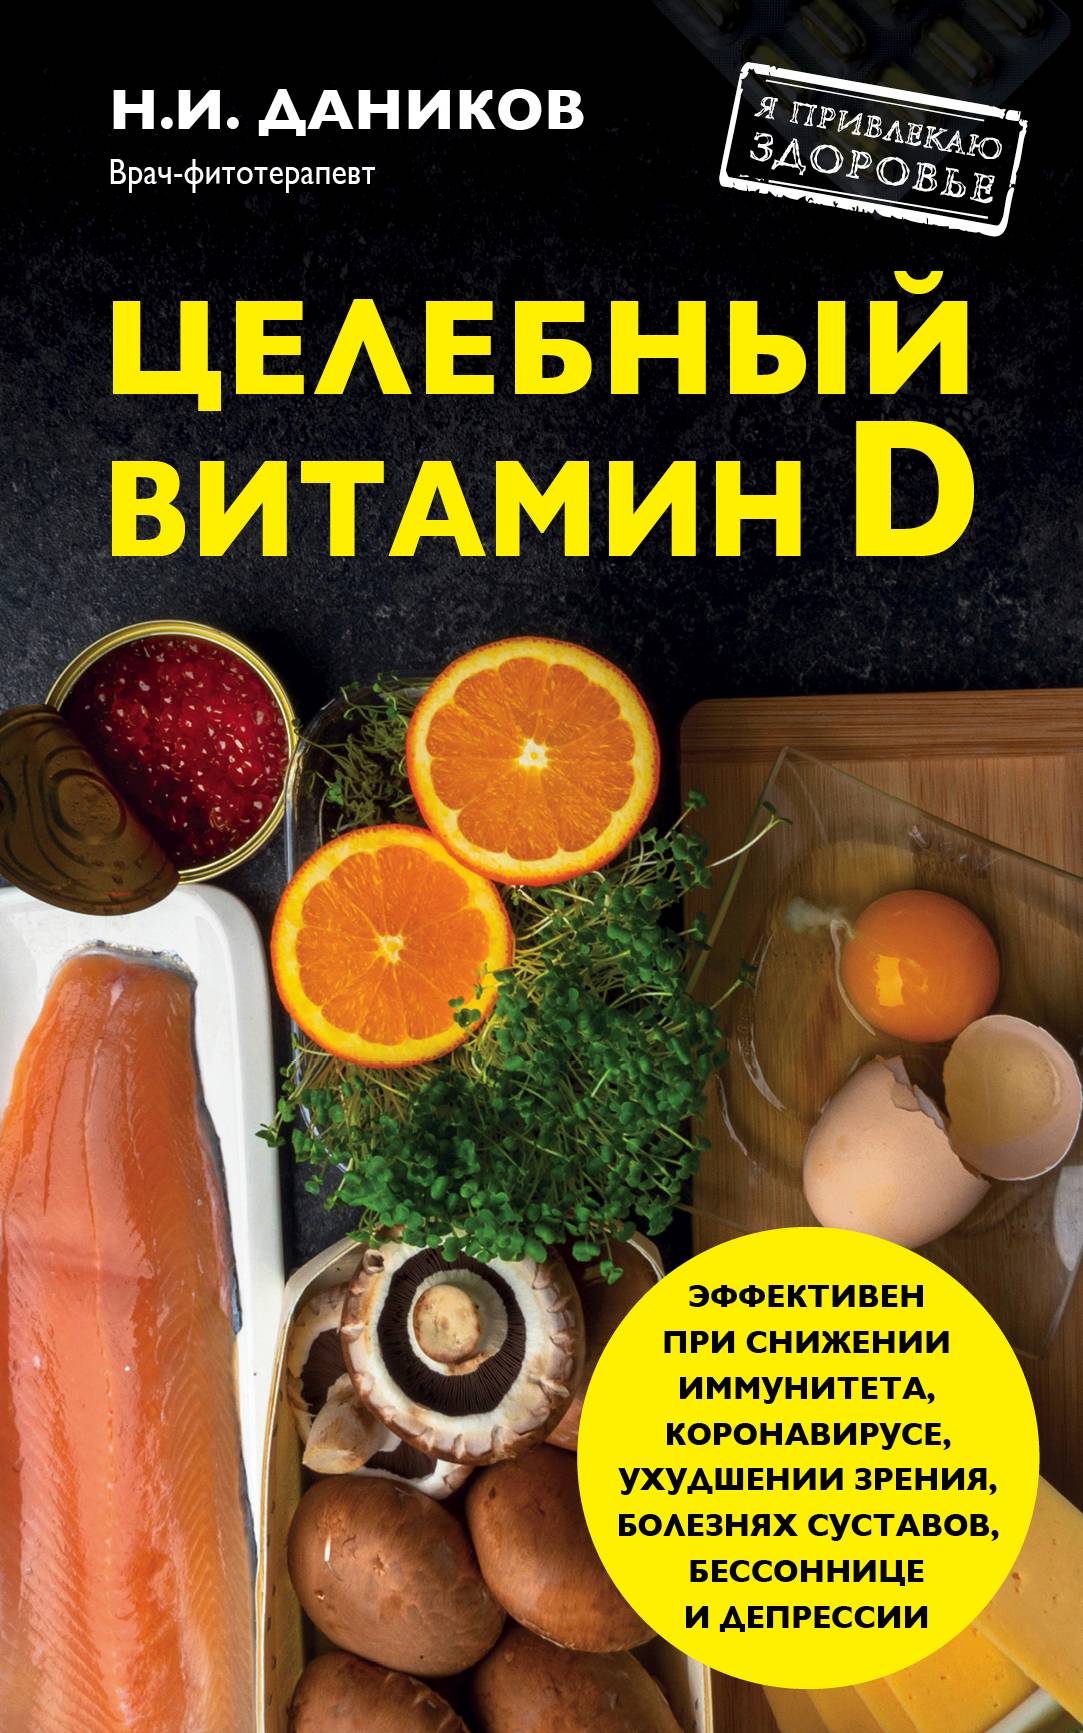 Книга Целебный витамин D из серии , созданная Николай Даников, может относится к жанру Здоровье, Кулинария. Стоимость электронной книги Целебный витамин D с идентификатором 9963171 составляет 149.00 руб.